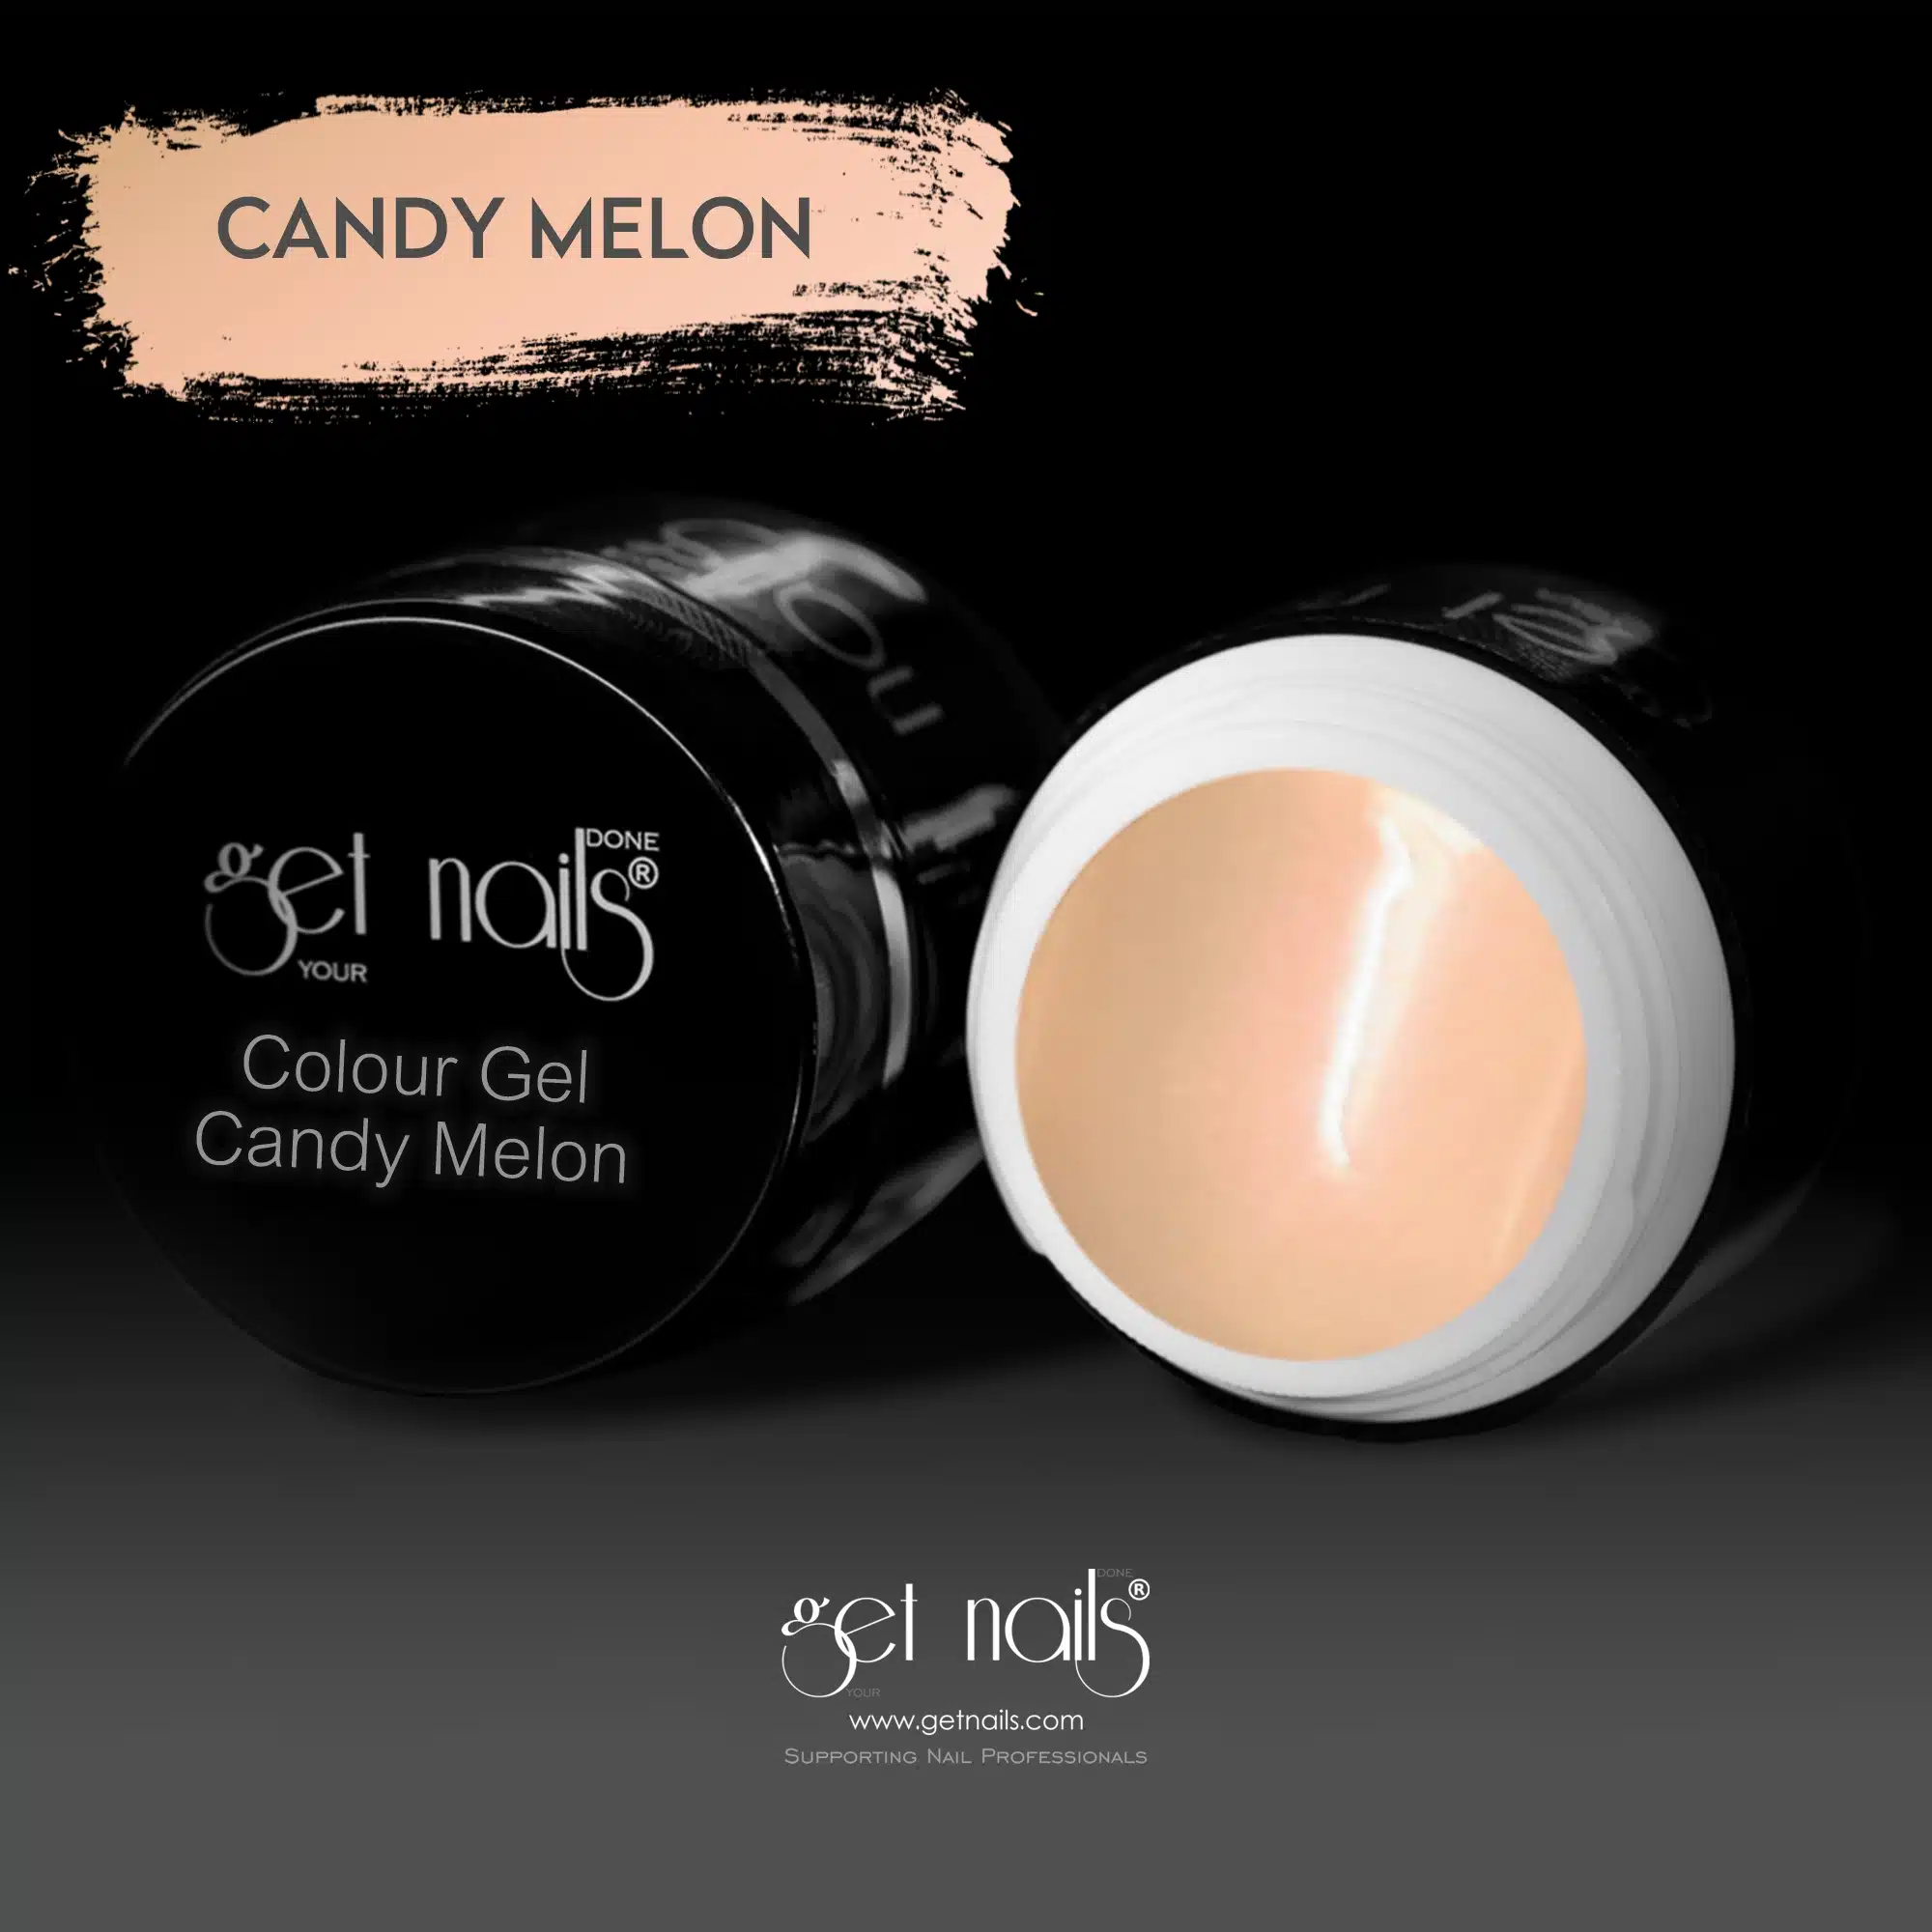 Get Nails Austria - Colour Gel Candy Melon 5g